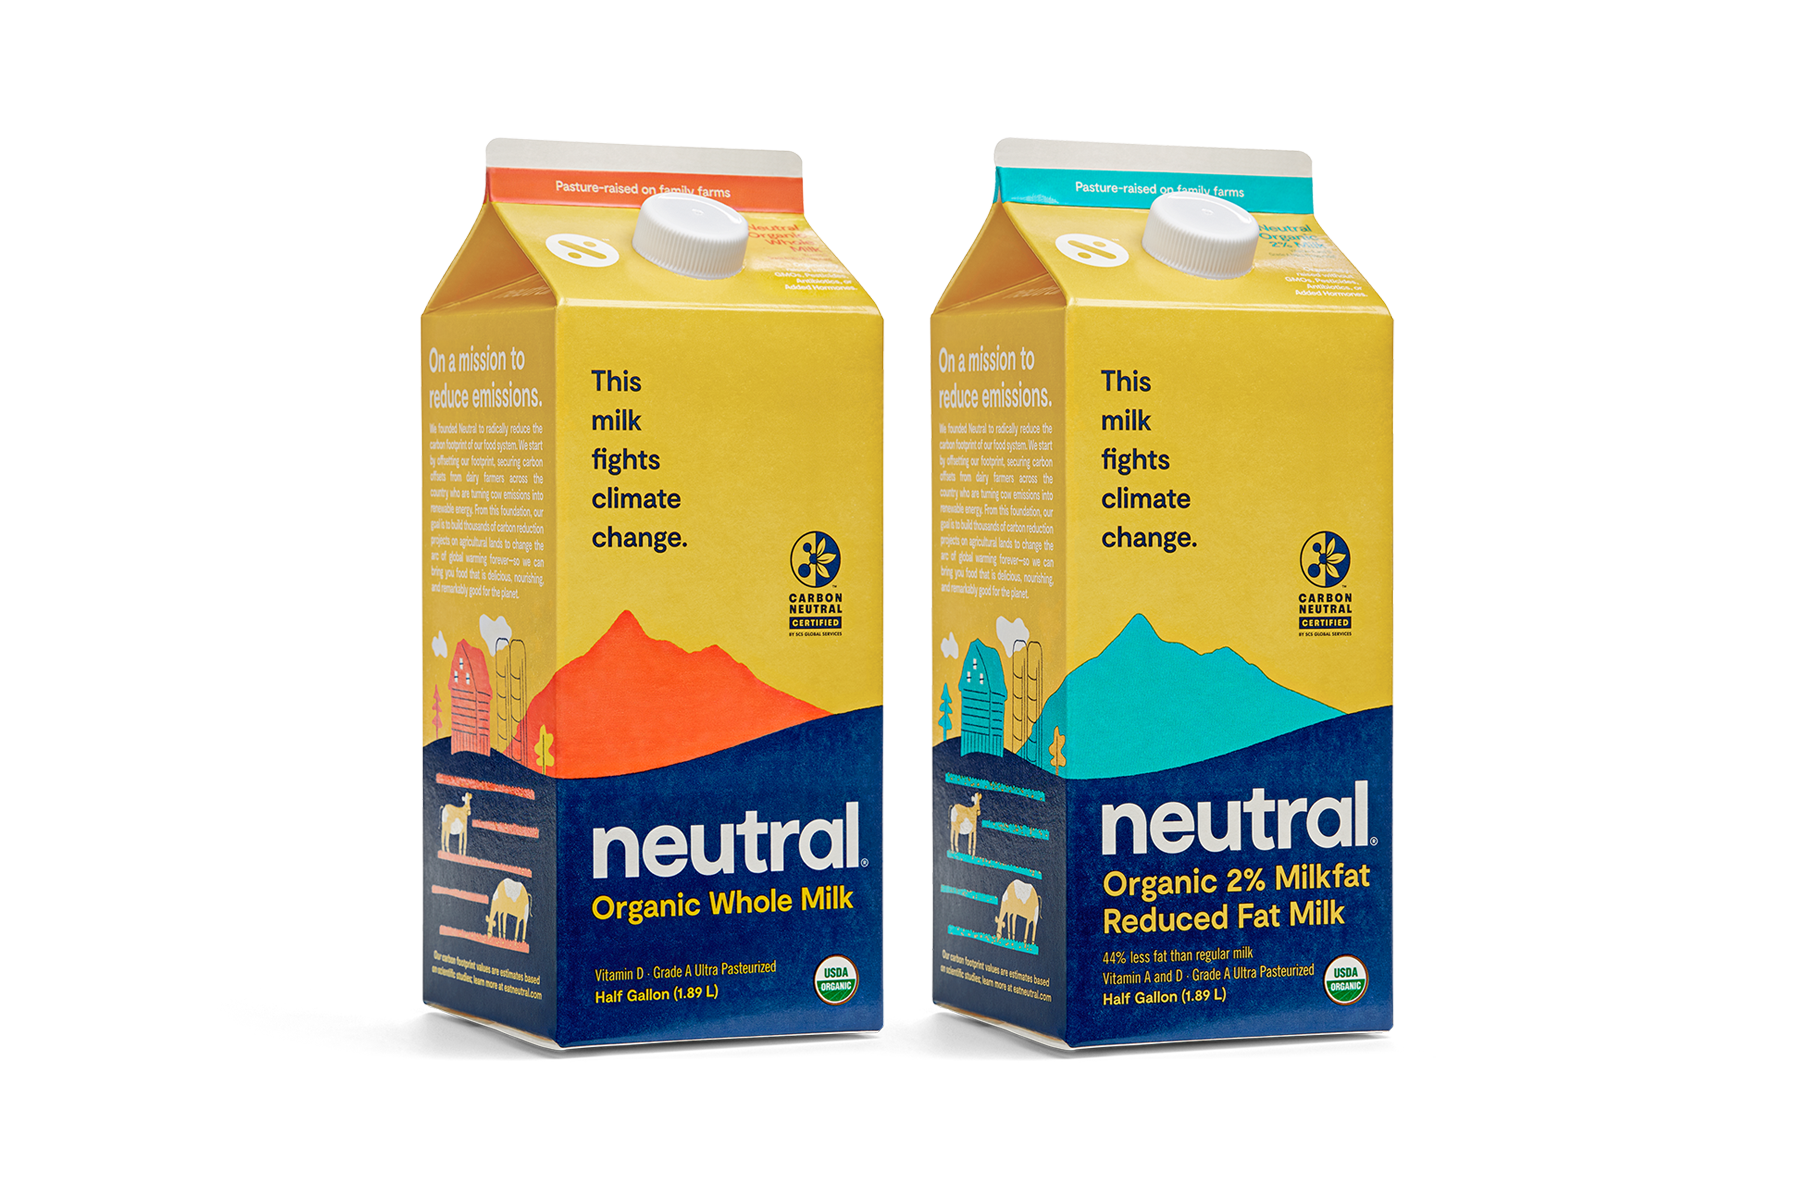 Neutral milk